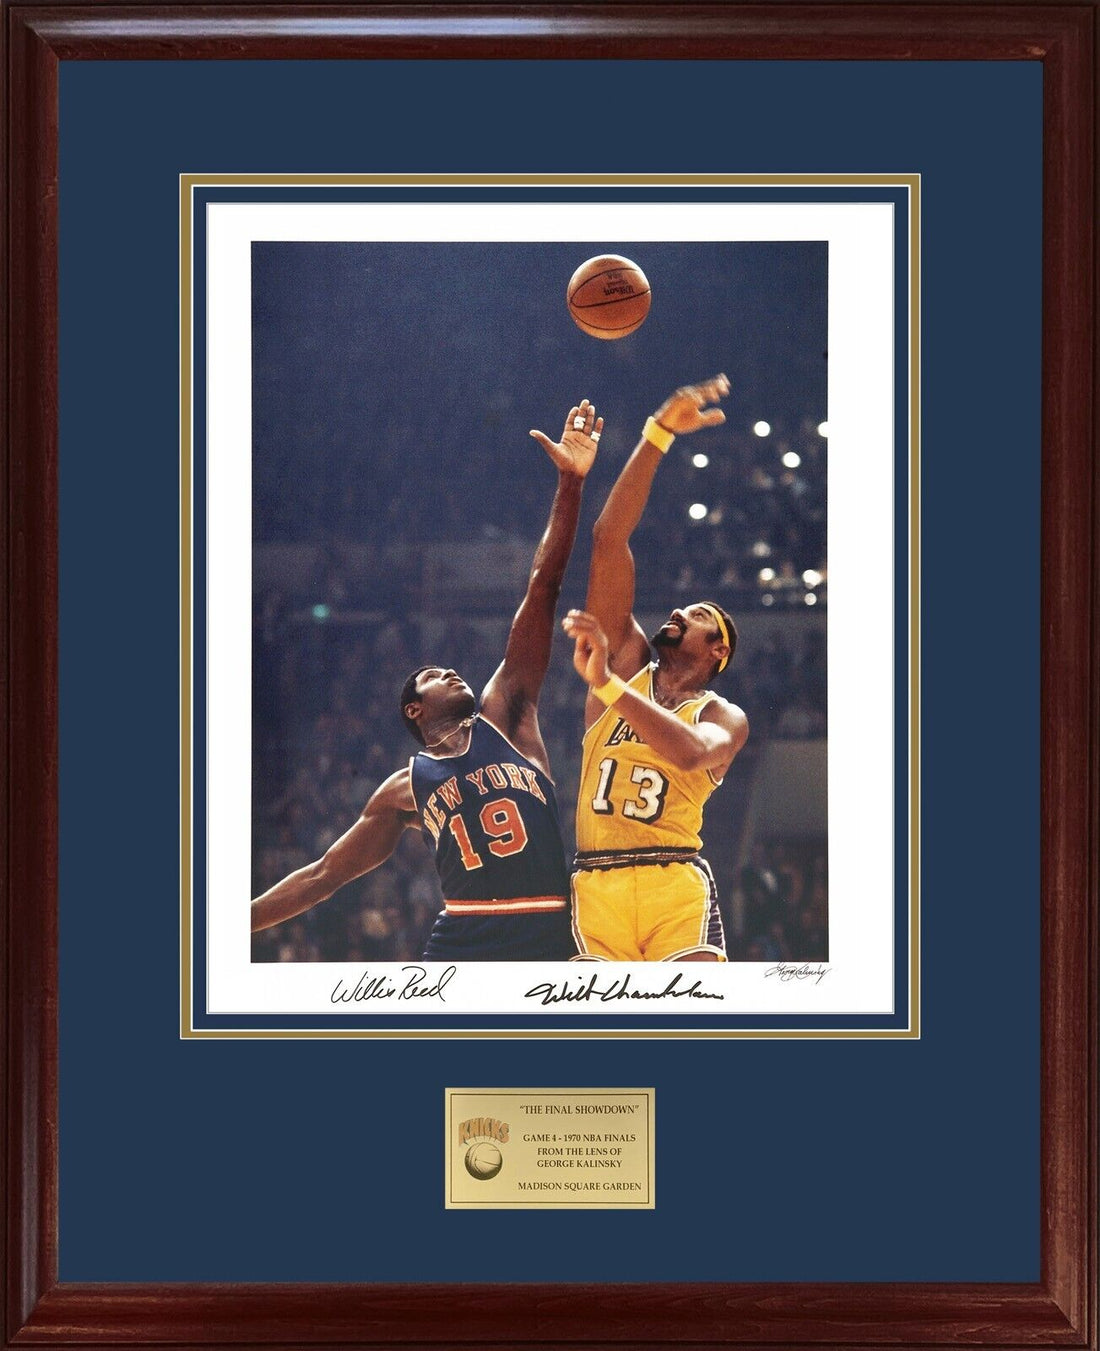 Willis Reed &amp; Wilt Chamberlain Signed Photo, 1970 NBA Finals Knicks Lakers. JSA